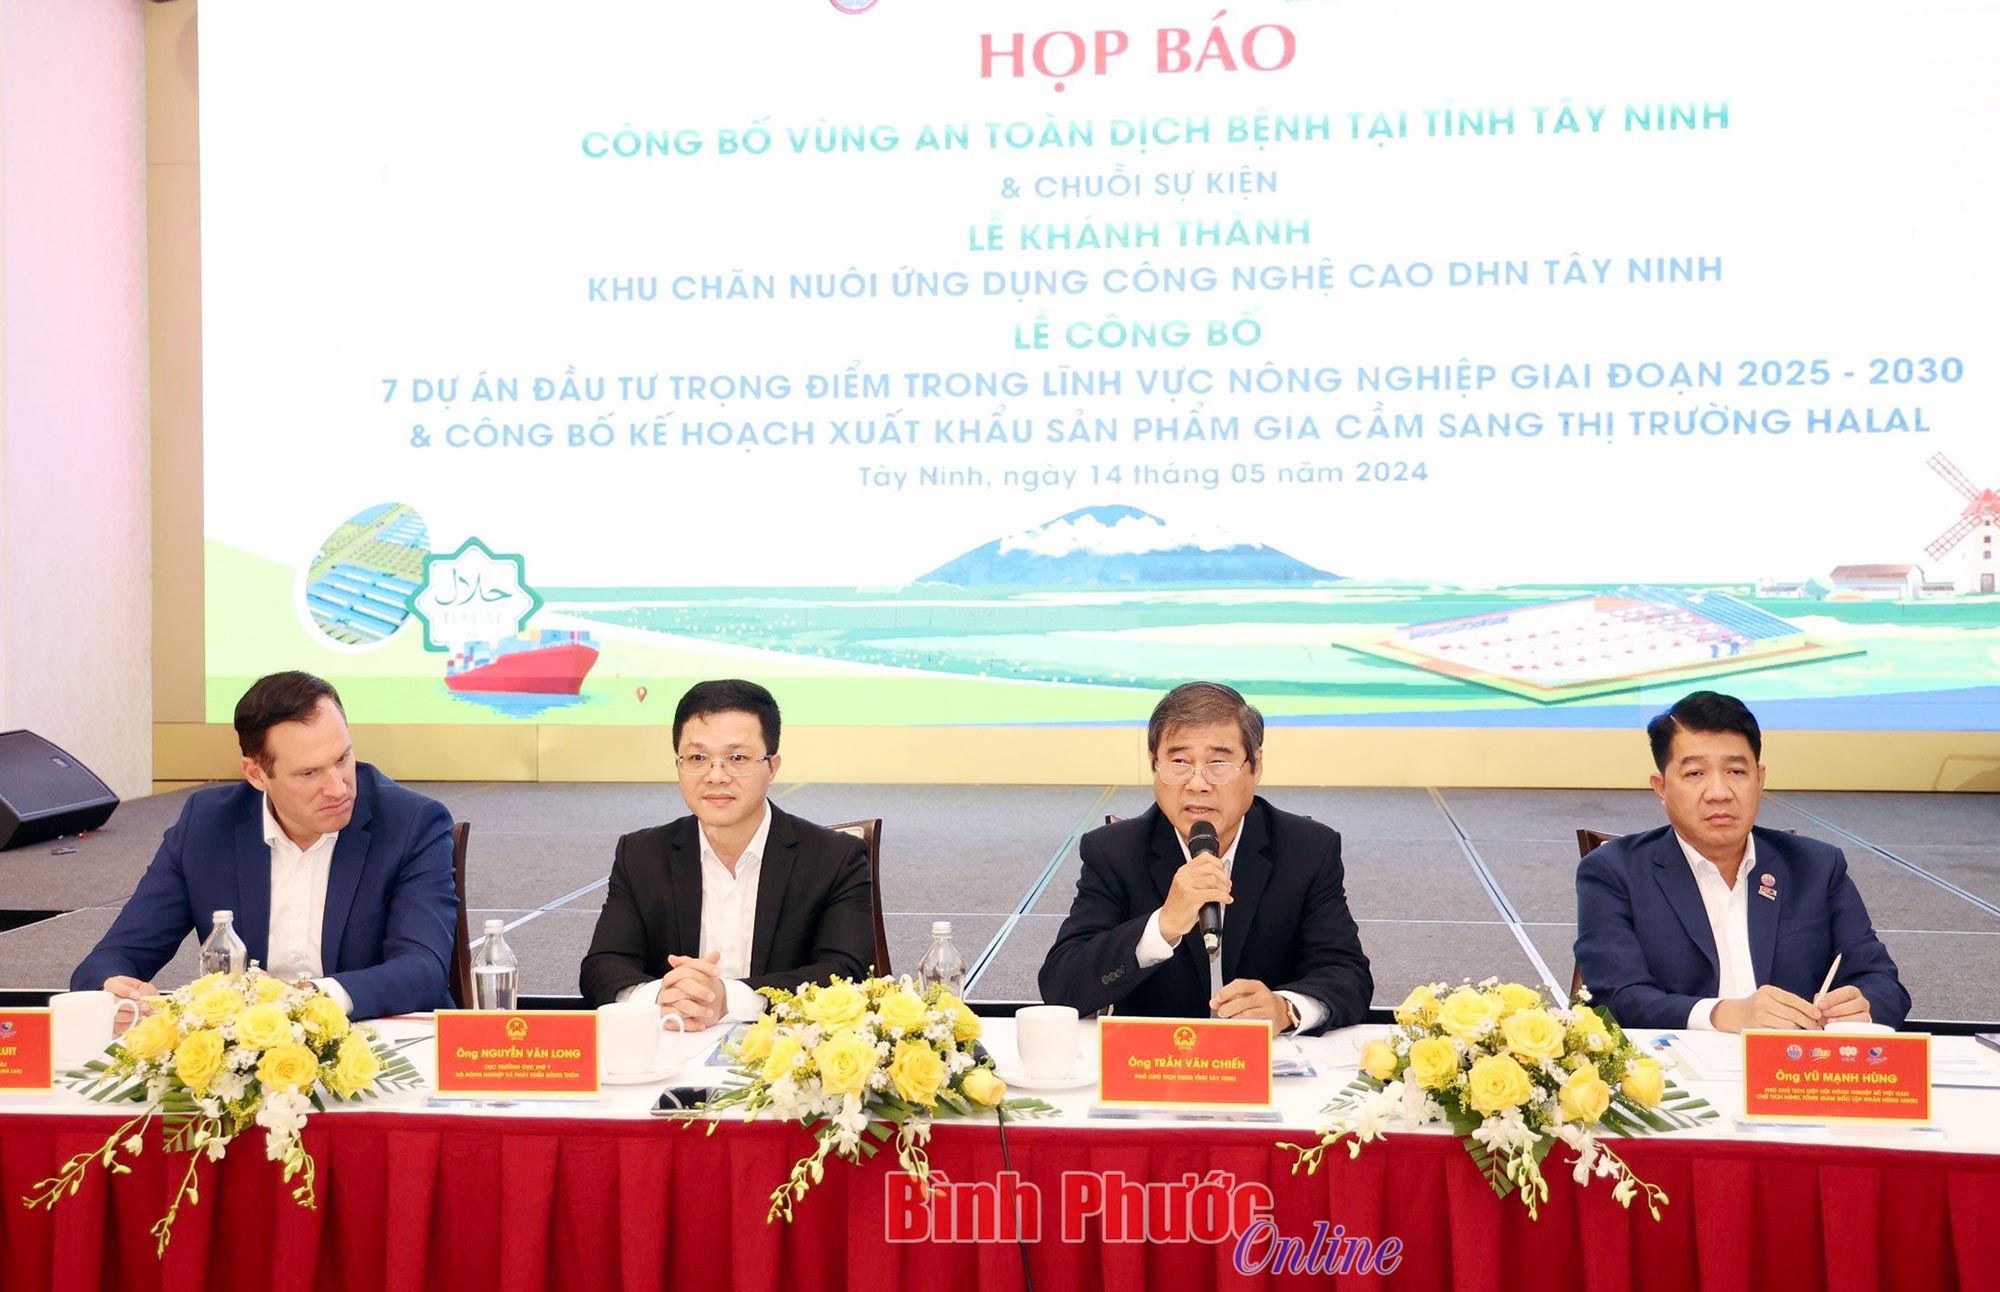 Công bố vùng an toàn dịch bệnh tỉnh Tây Ninh và chuỗi sự kiện ngày 19-5